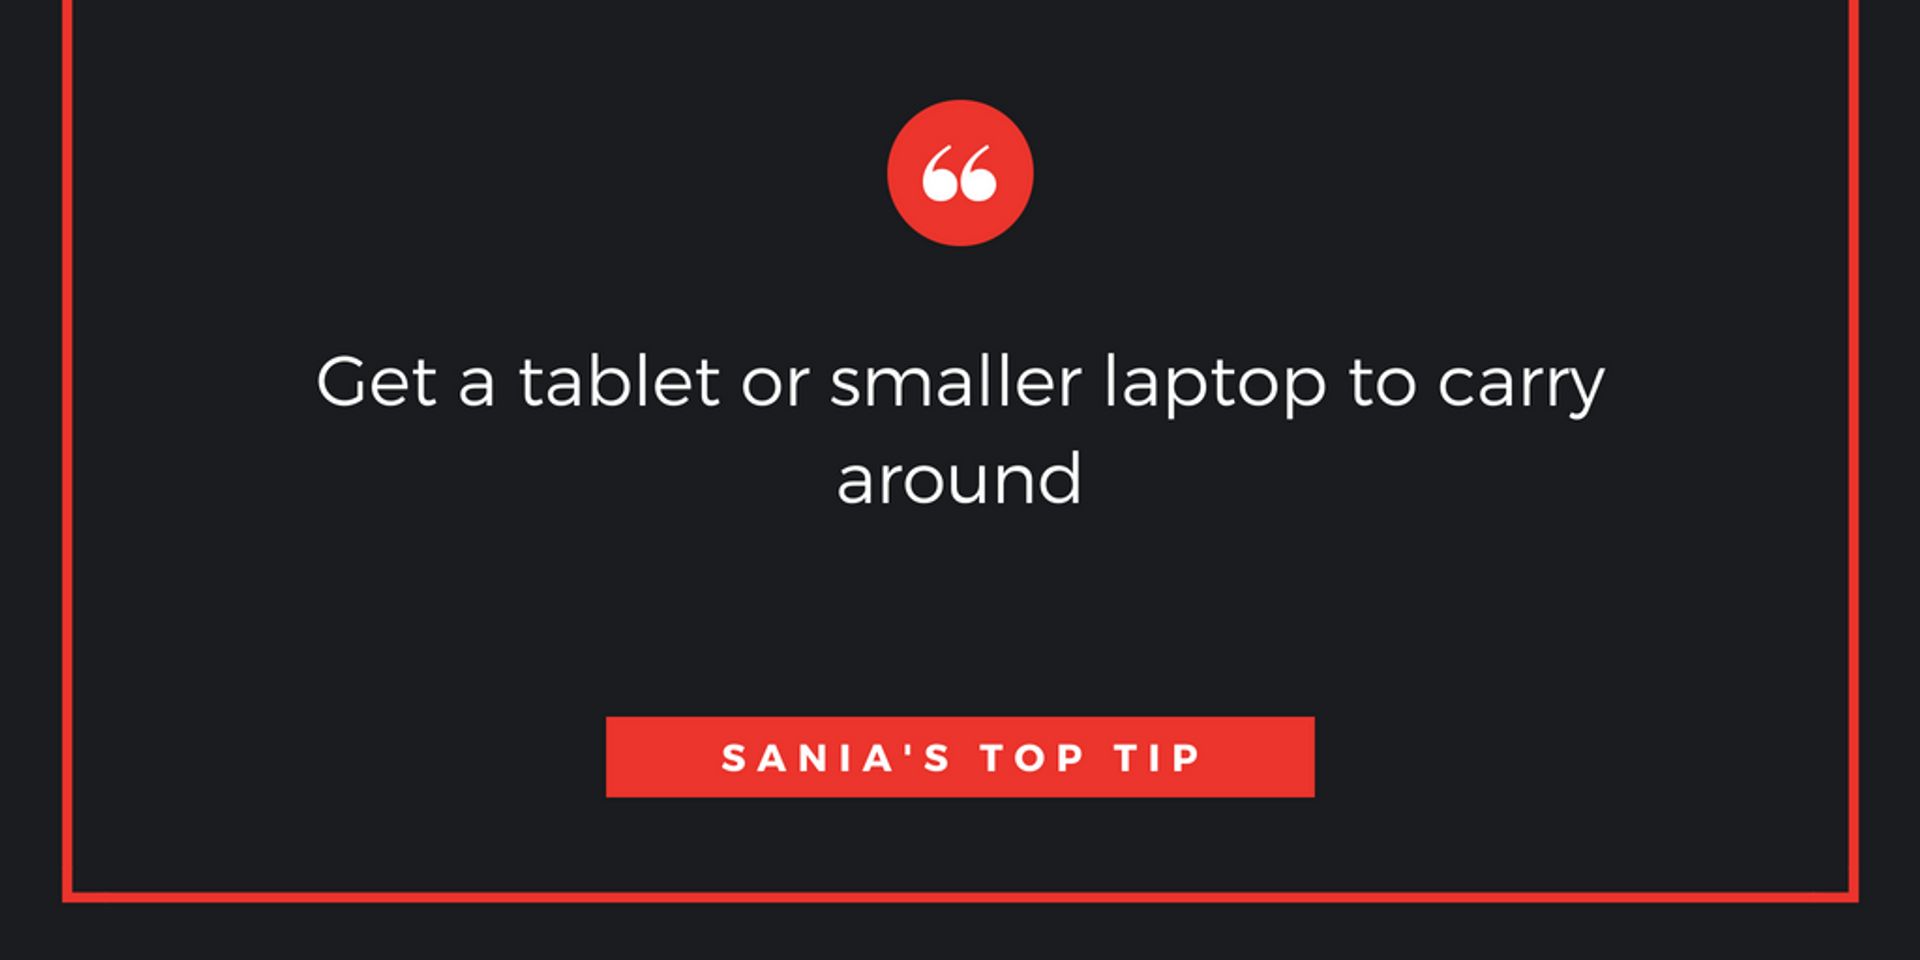 Sania's top electronics tip